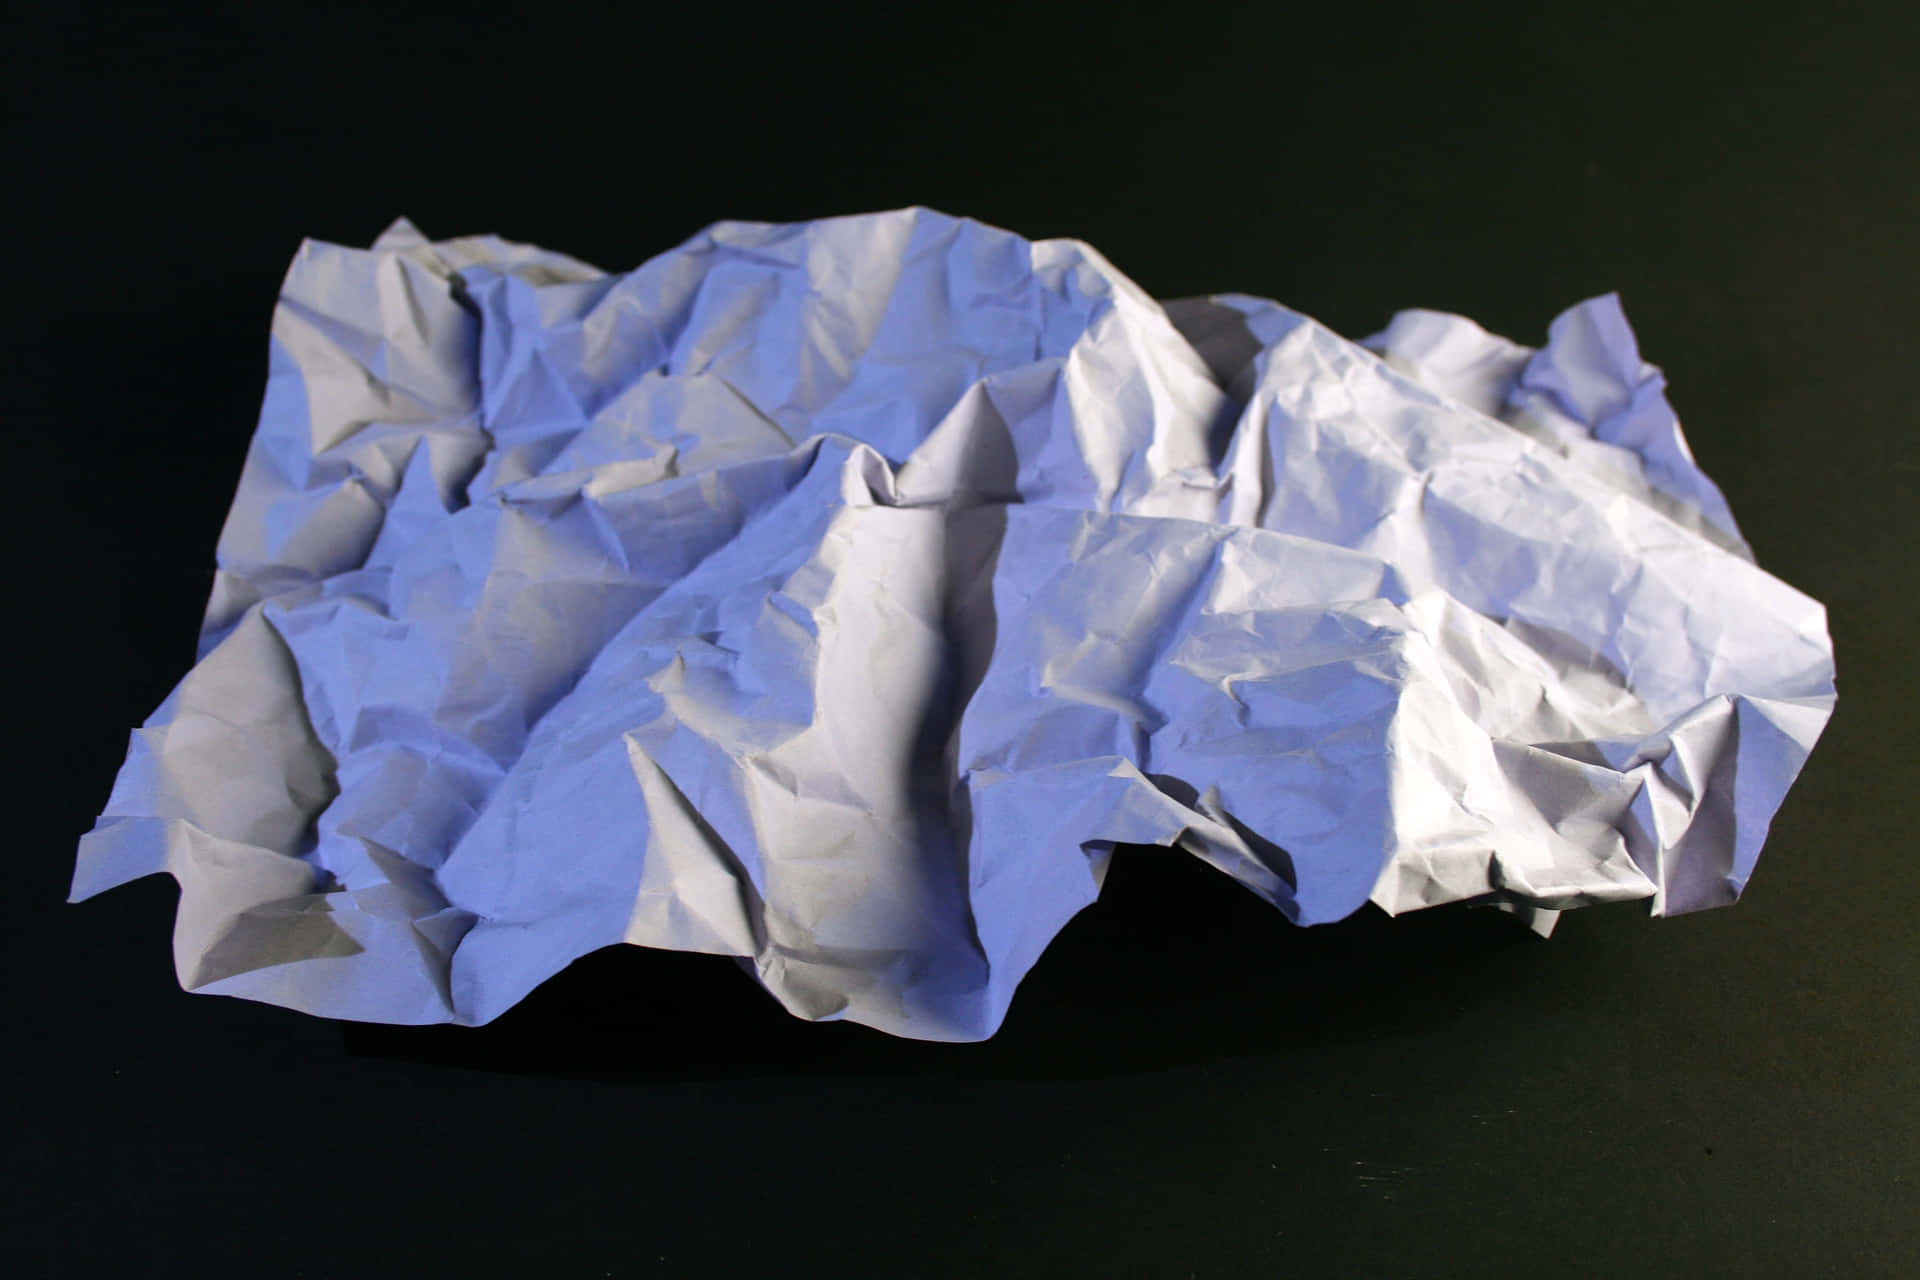 Enskrynklat Pappersbakgrund I Blått Som Visar Den Unika Texturen Och Linjerna I Papperets Form.